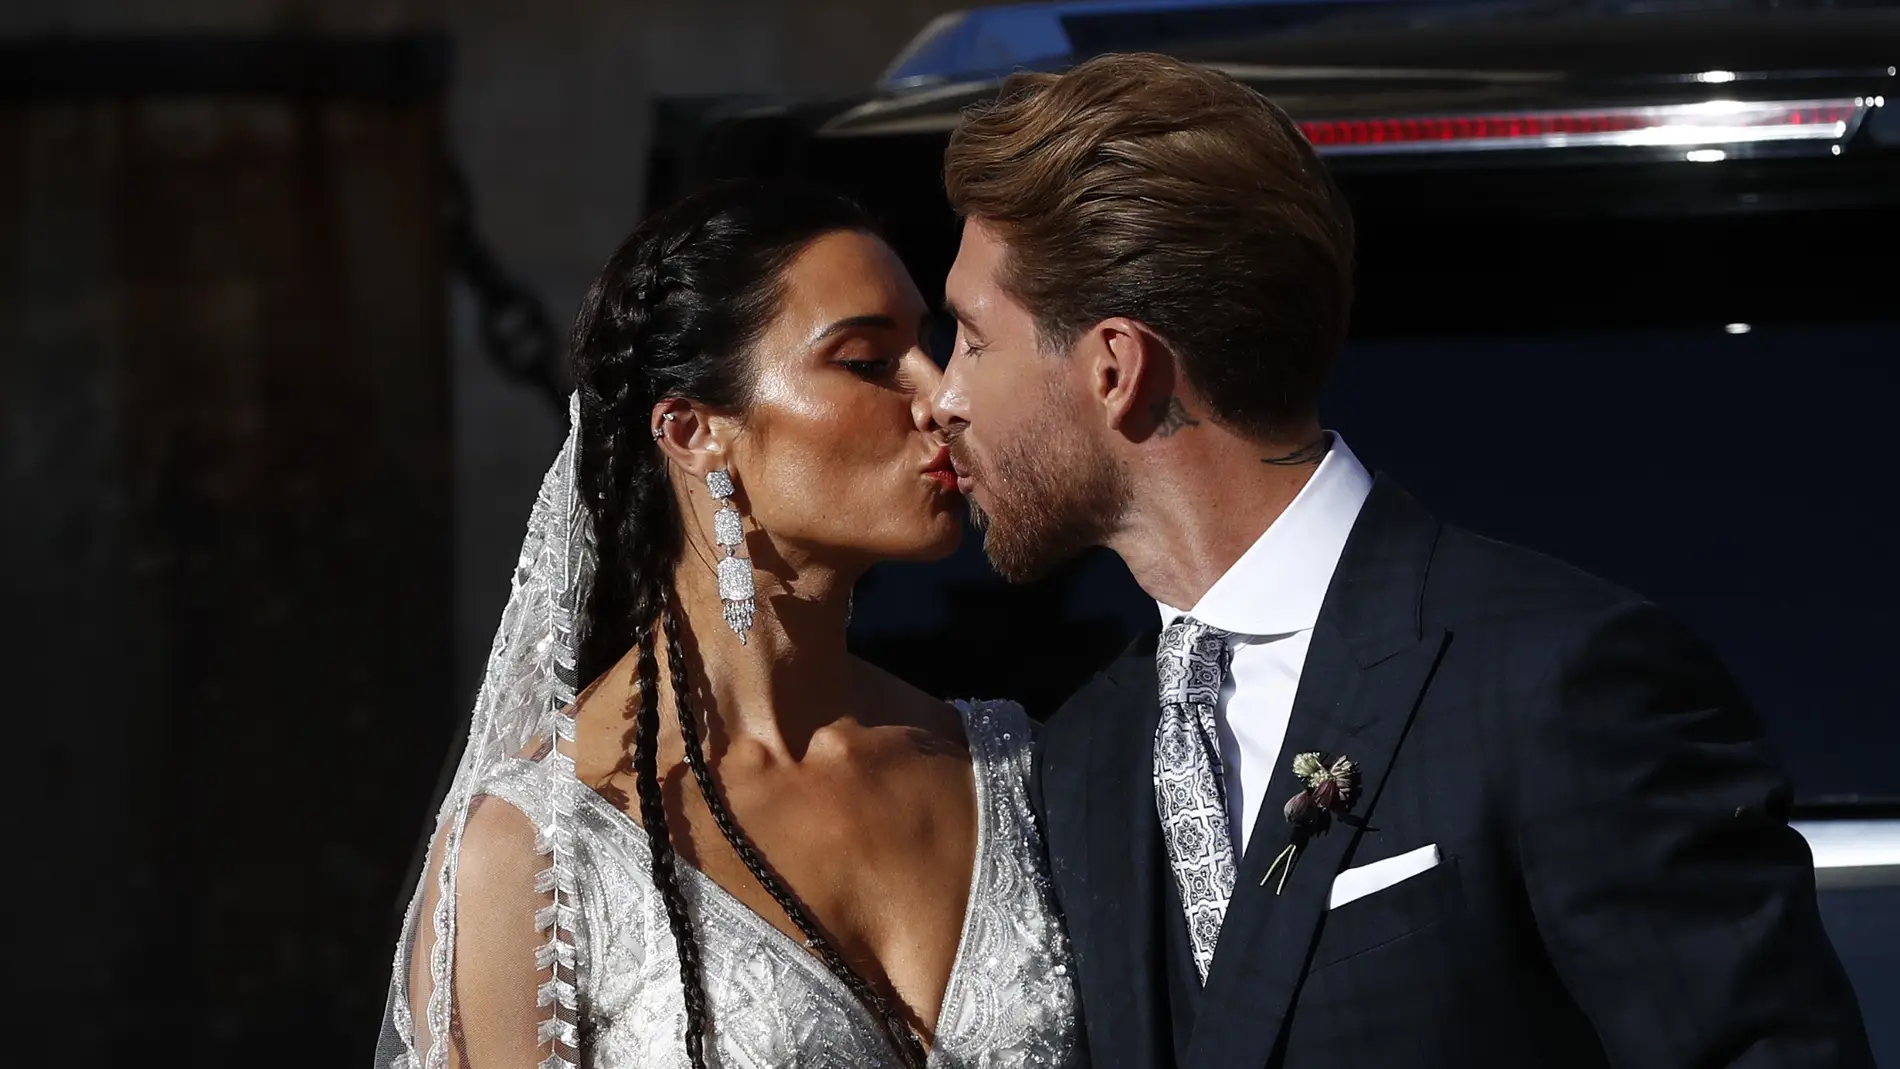 El beso de los recién casados Pilar Rubio y Sergio Ramos title=